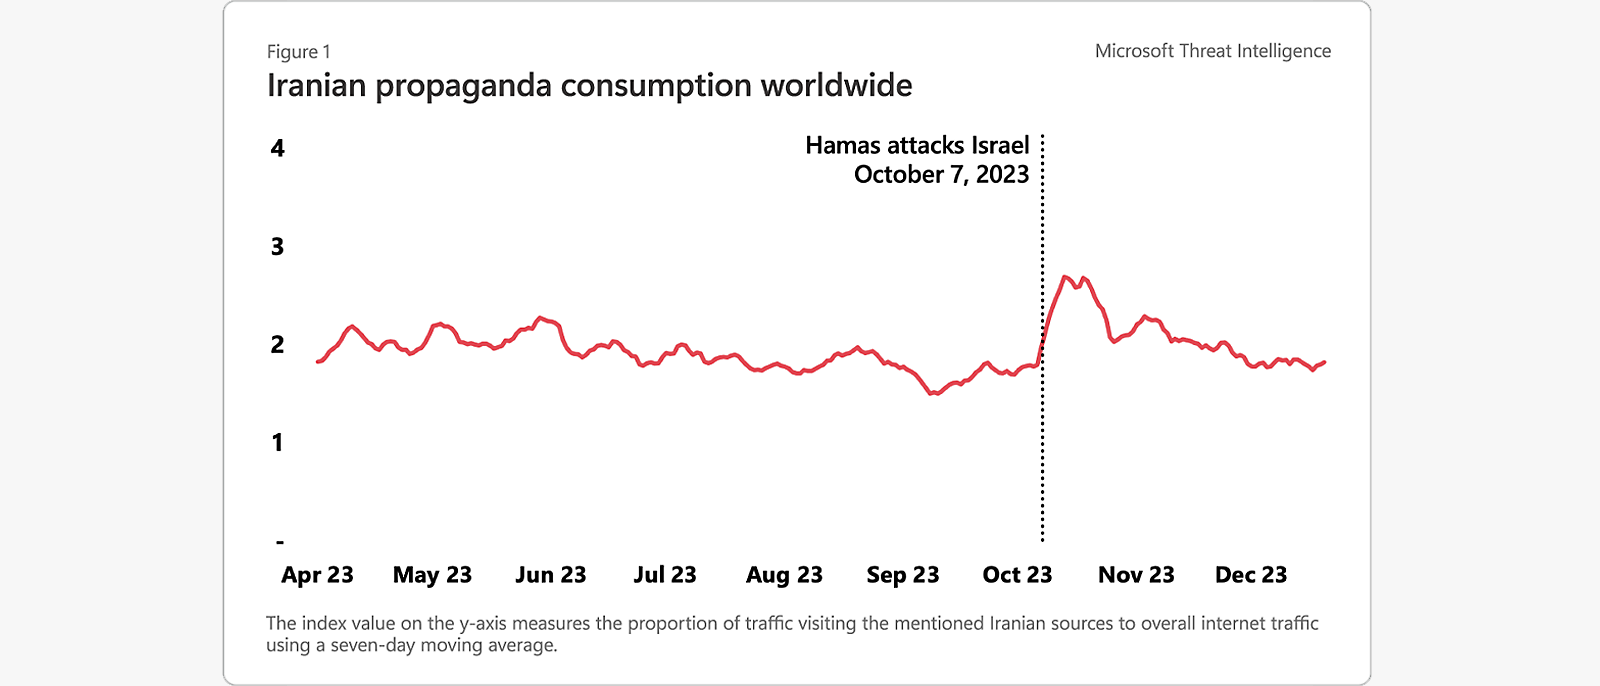 Consumo global de propaganda iraniana ilustrado com um gráfico da cronologia e da proporção do tráfego